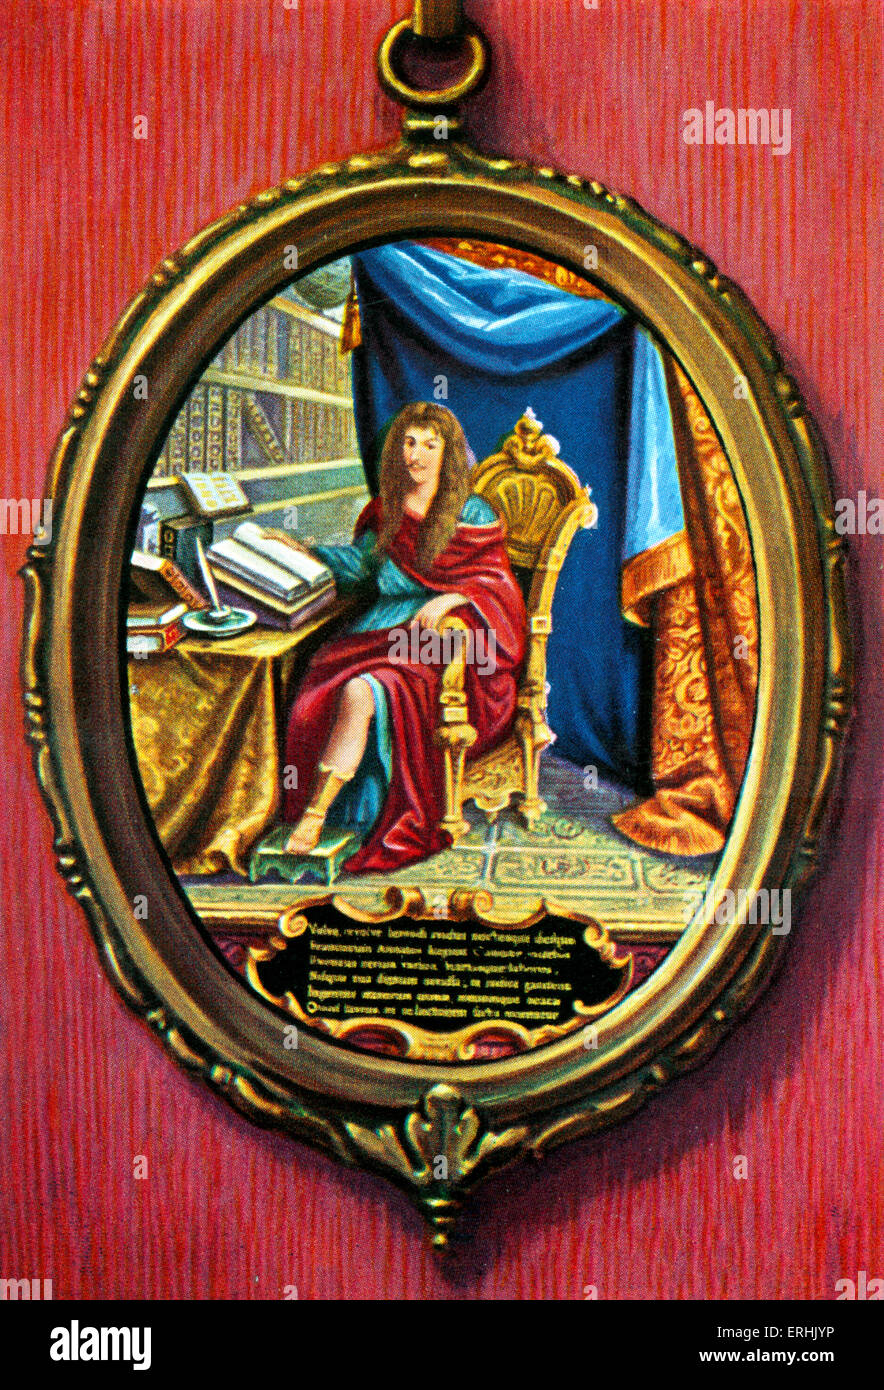 Louis II de Bourbon, Prince de Condé. Portrait of the French soldier Stock Photo: 83366634 - Alamy